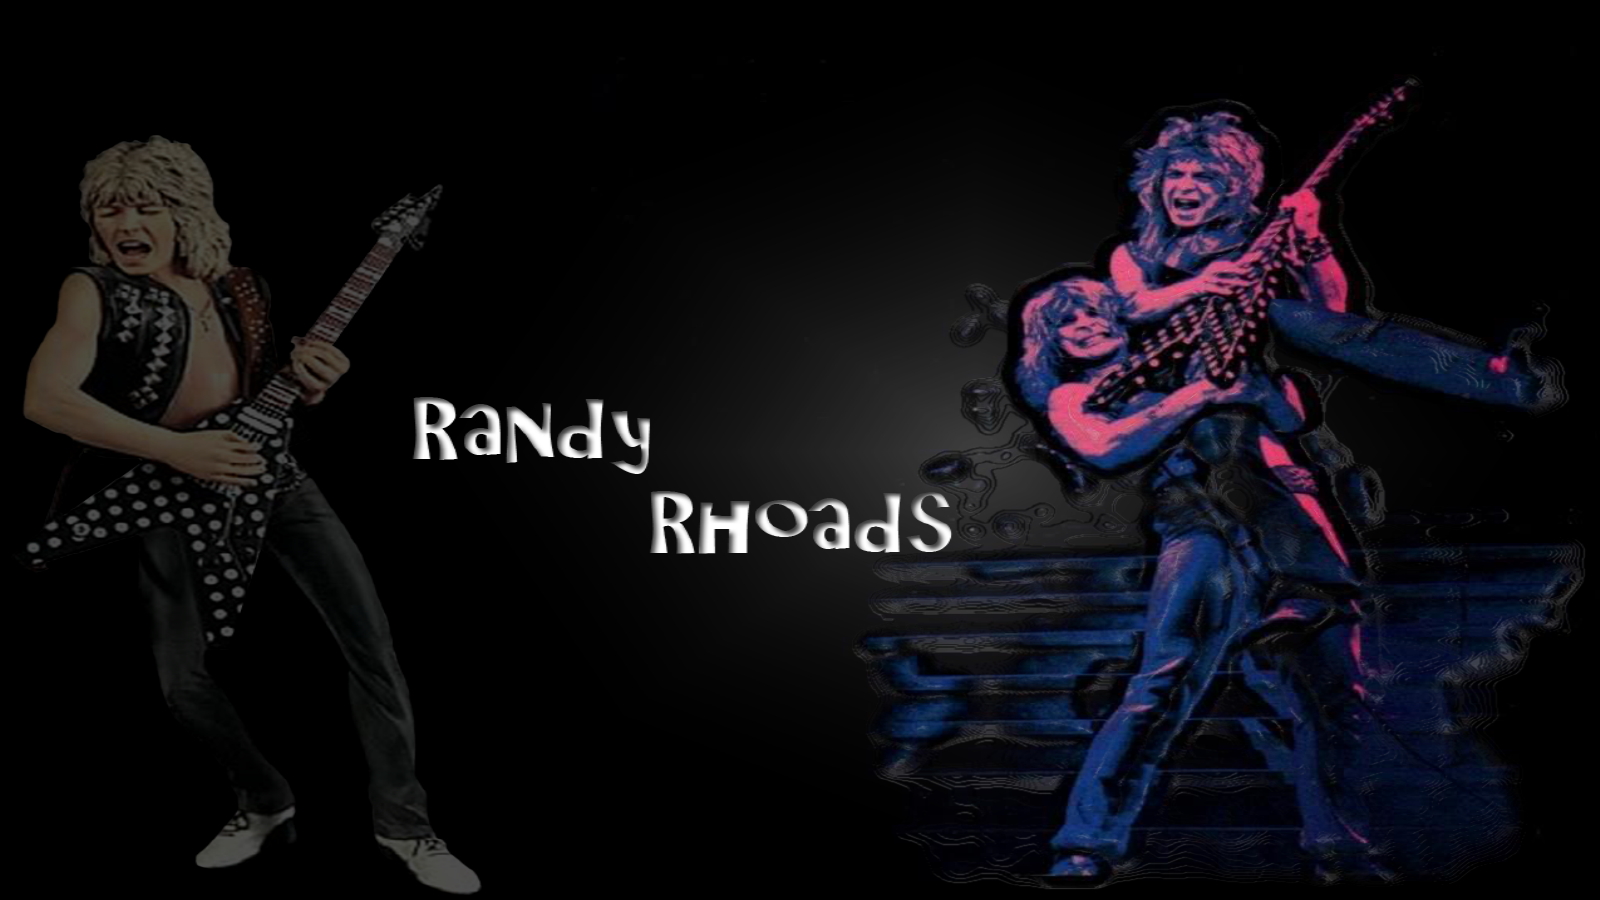 randy rhoads wallpaper,guitarist,darkness,musician,fictional character,music